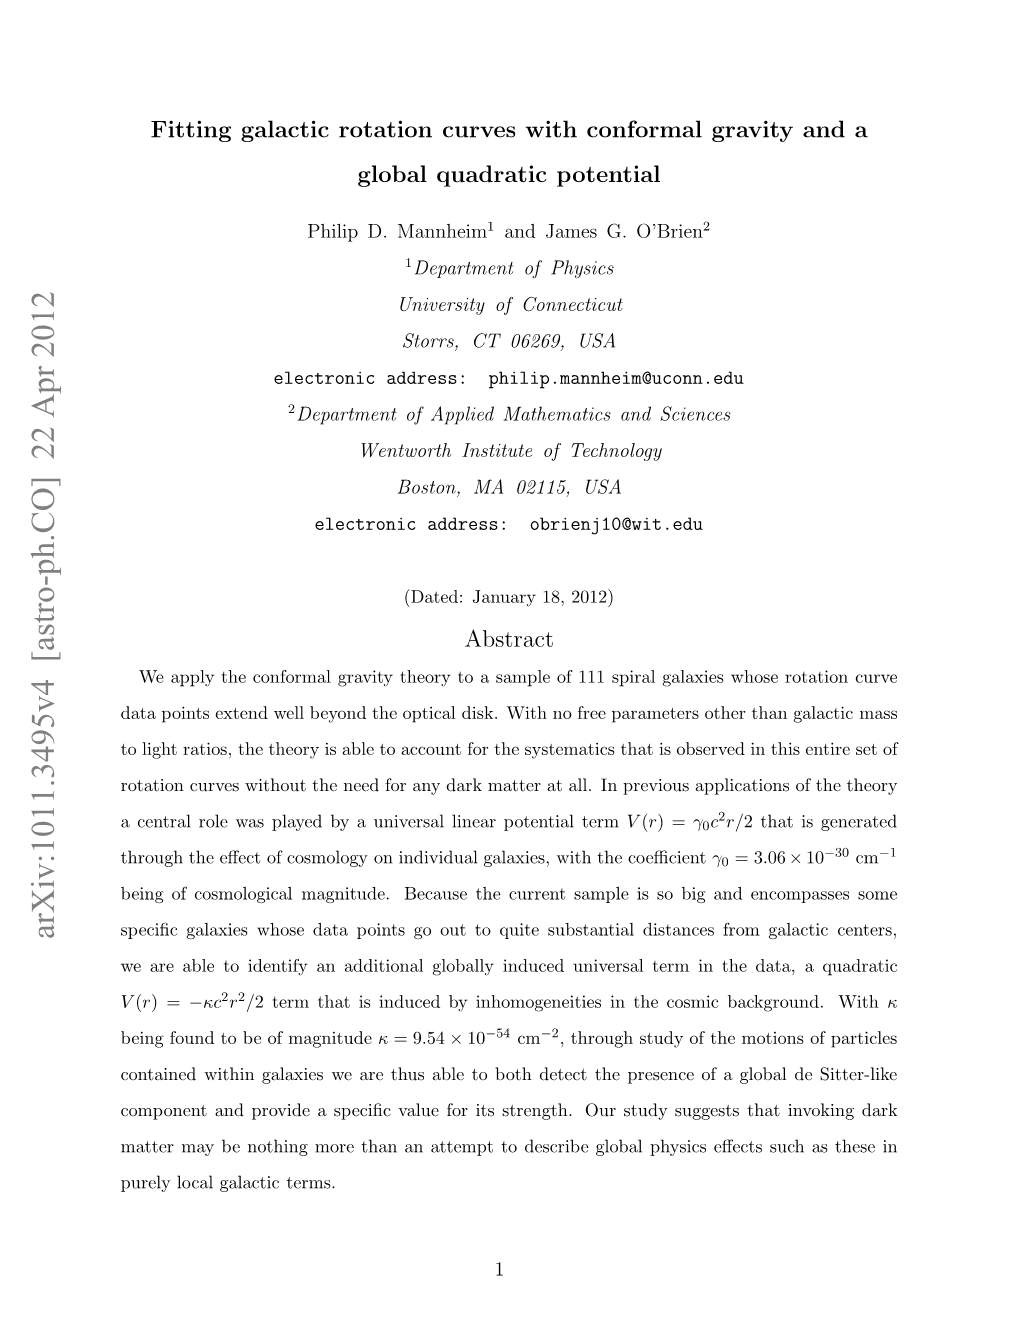 Arxiv:1011.3495V4 [Astro-Ph.CO] 22 Apr 2012 Atrmyb Ohn Oeta Natmtt Ecieglobal Describe to Terms